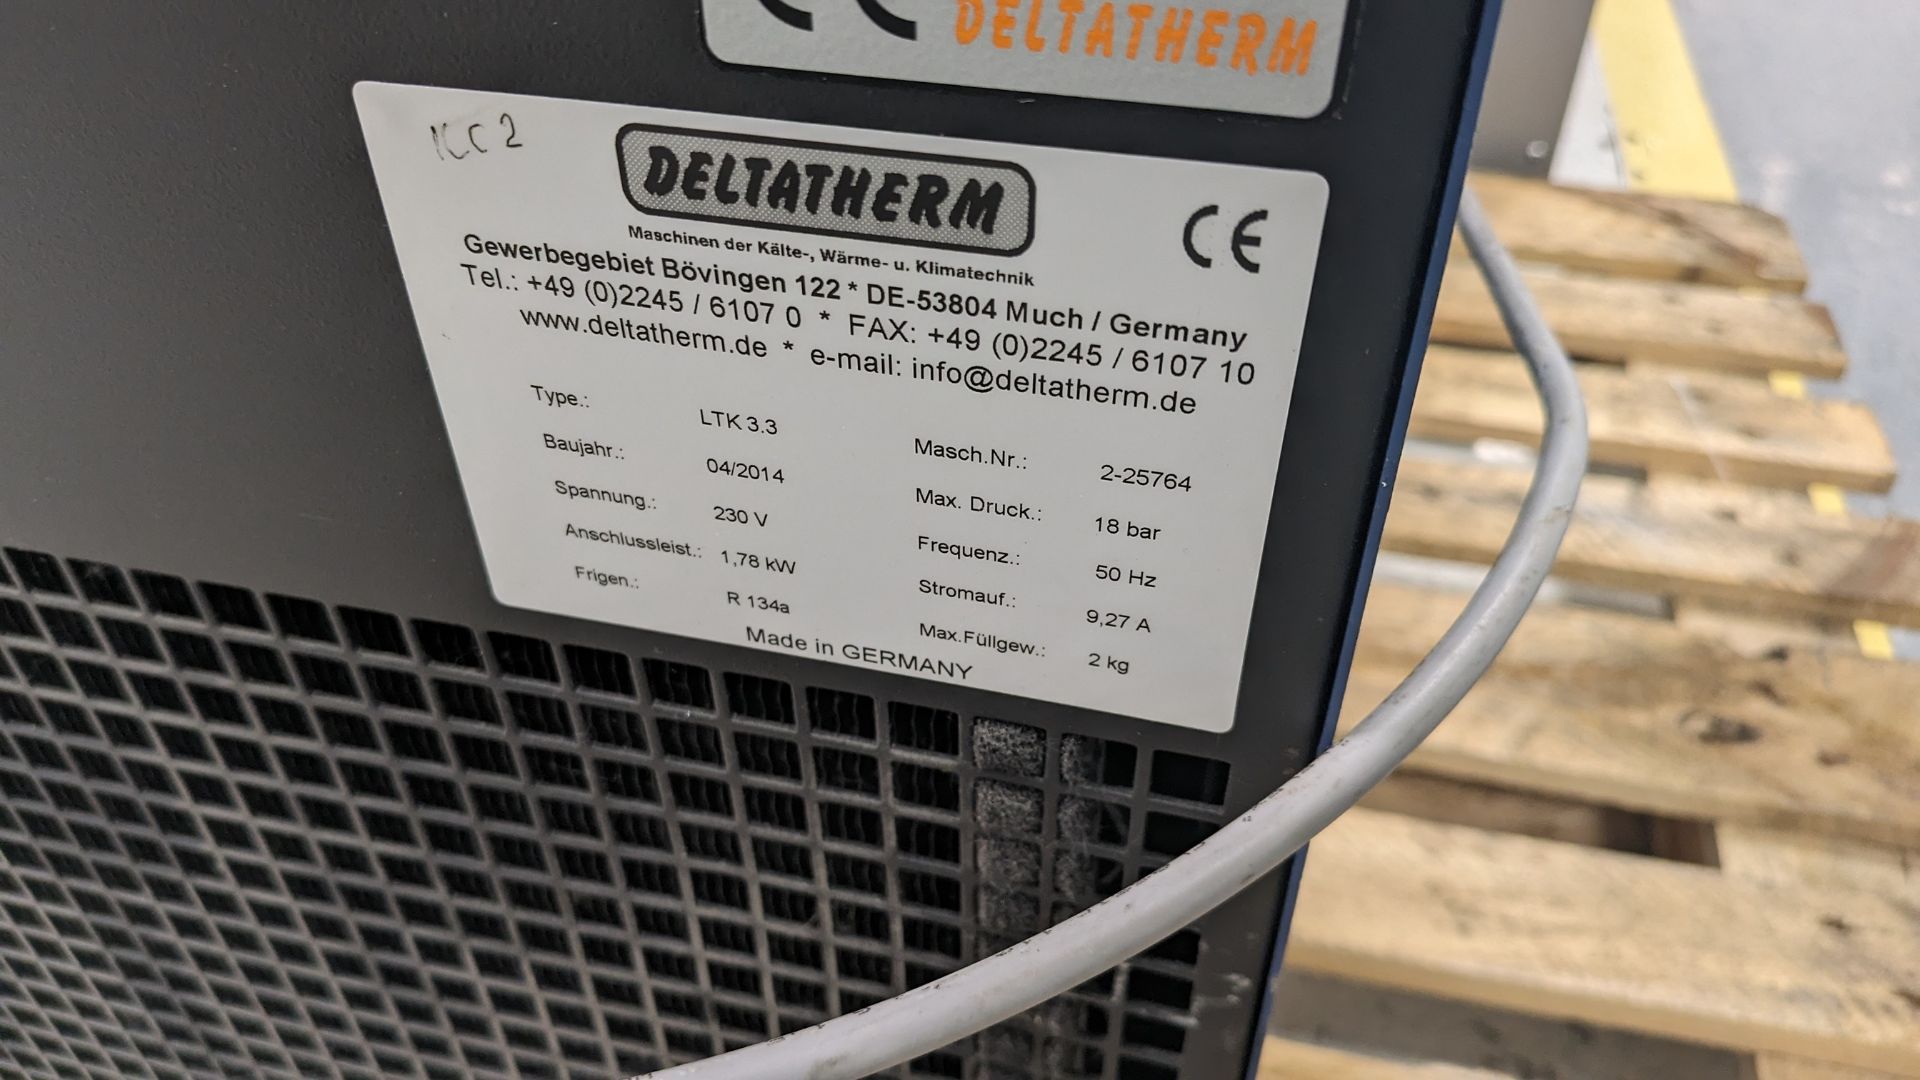 Deltatherm LTK 3.3 industrial cooler - Image 2 of 2